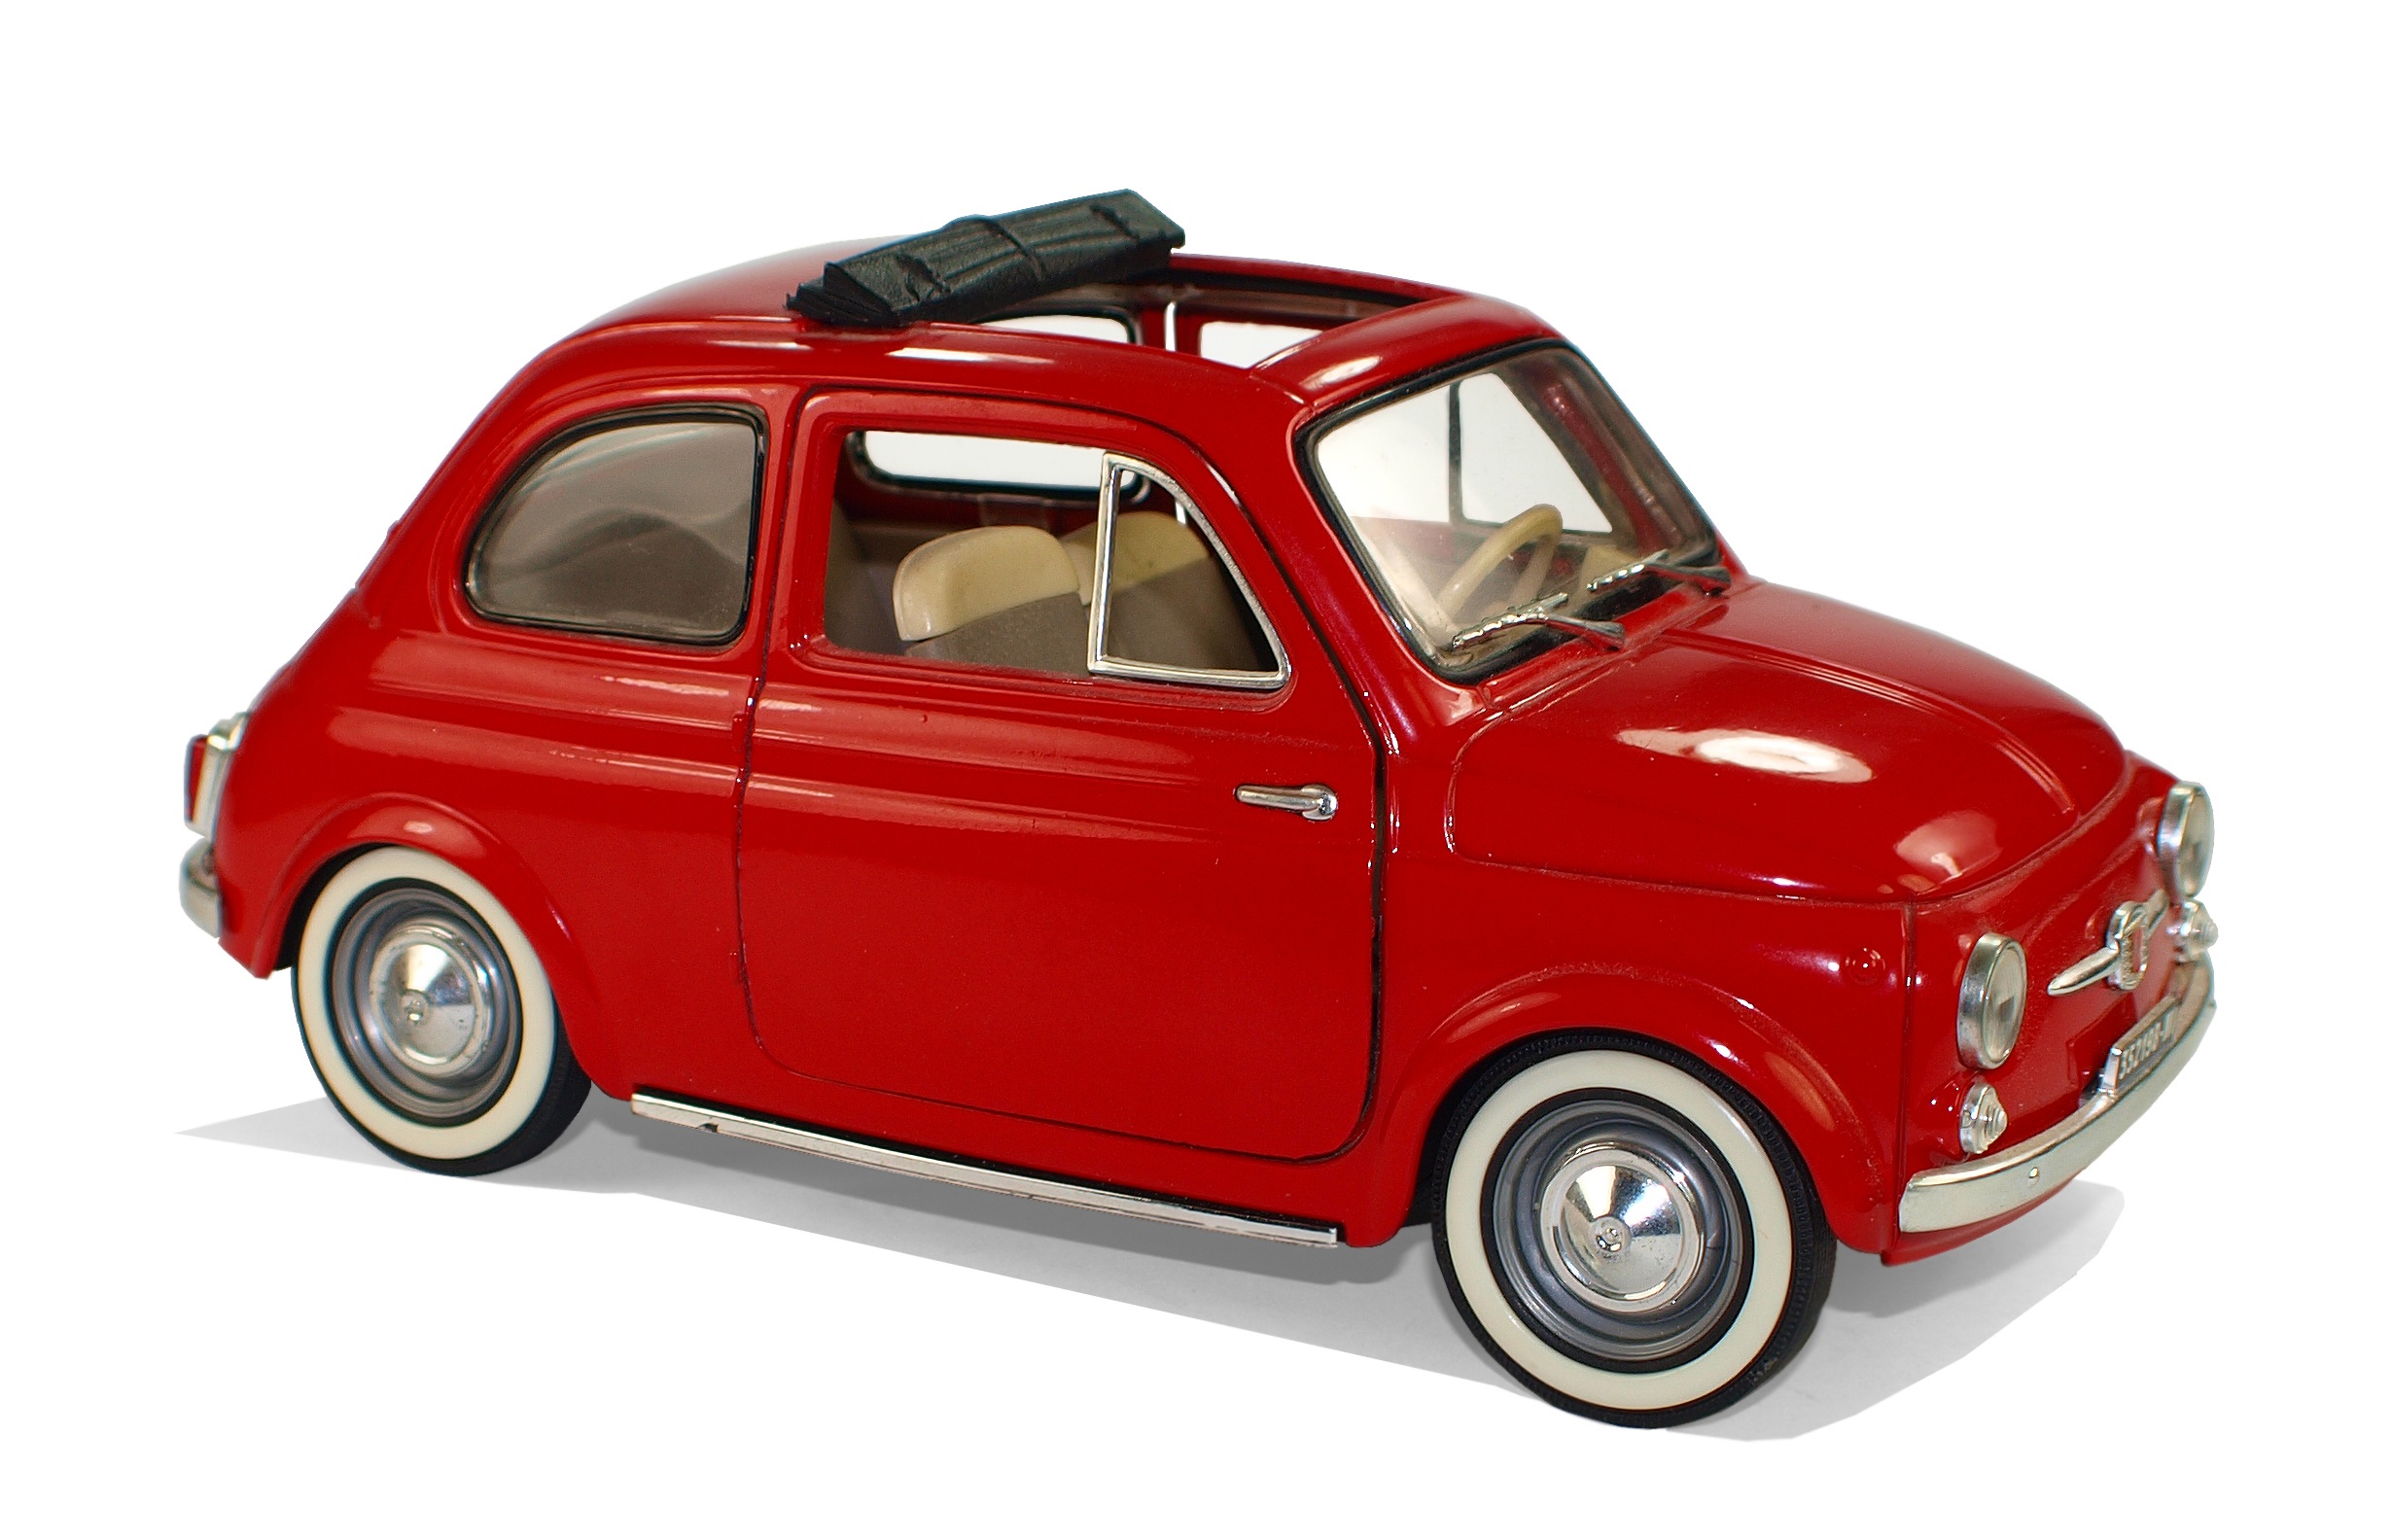 Бесплатное фото Игрушечная модель автомобиля фиат 500 красного цвета